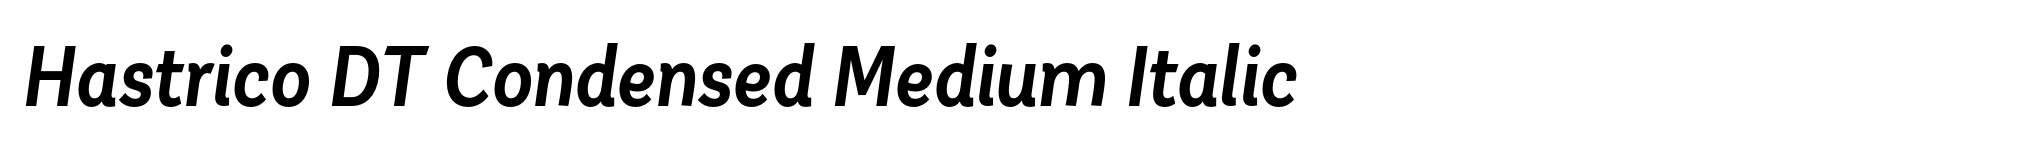 Hastrico DT Condensed Medium Italic image